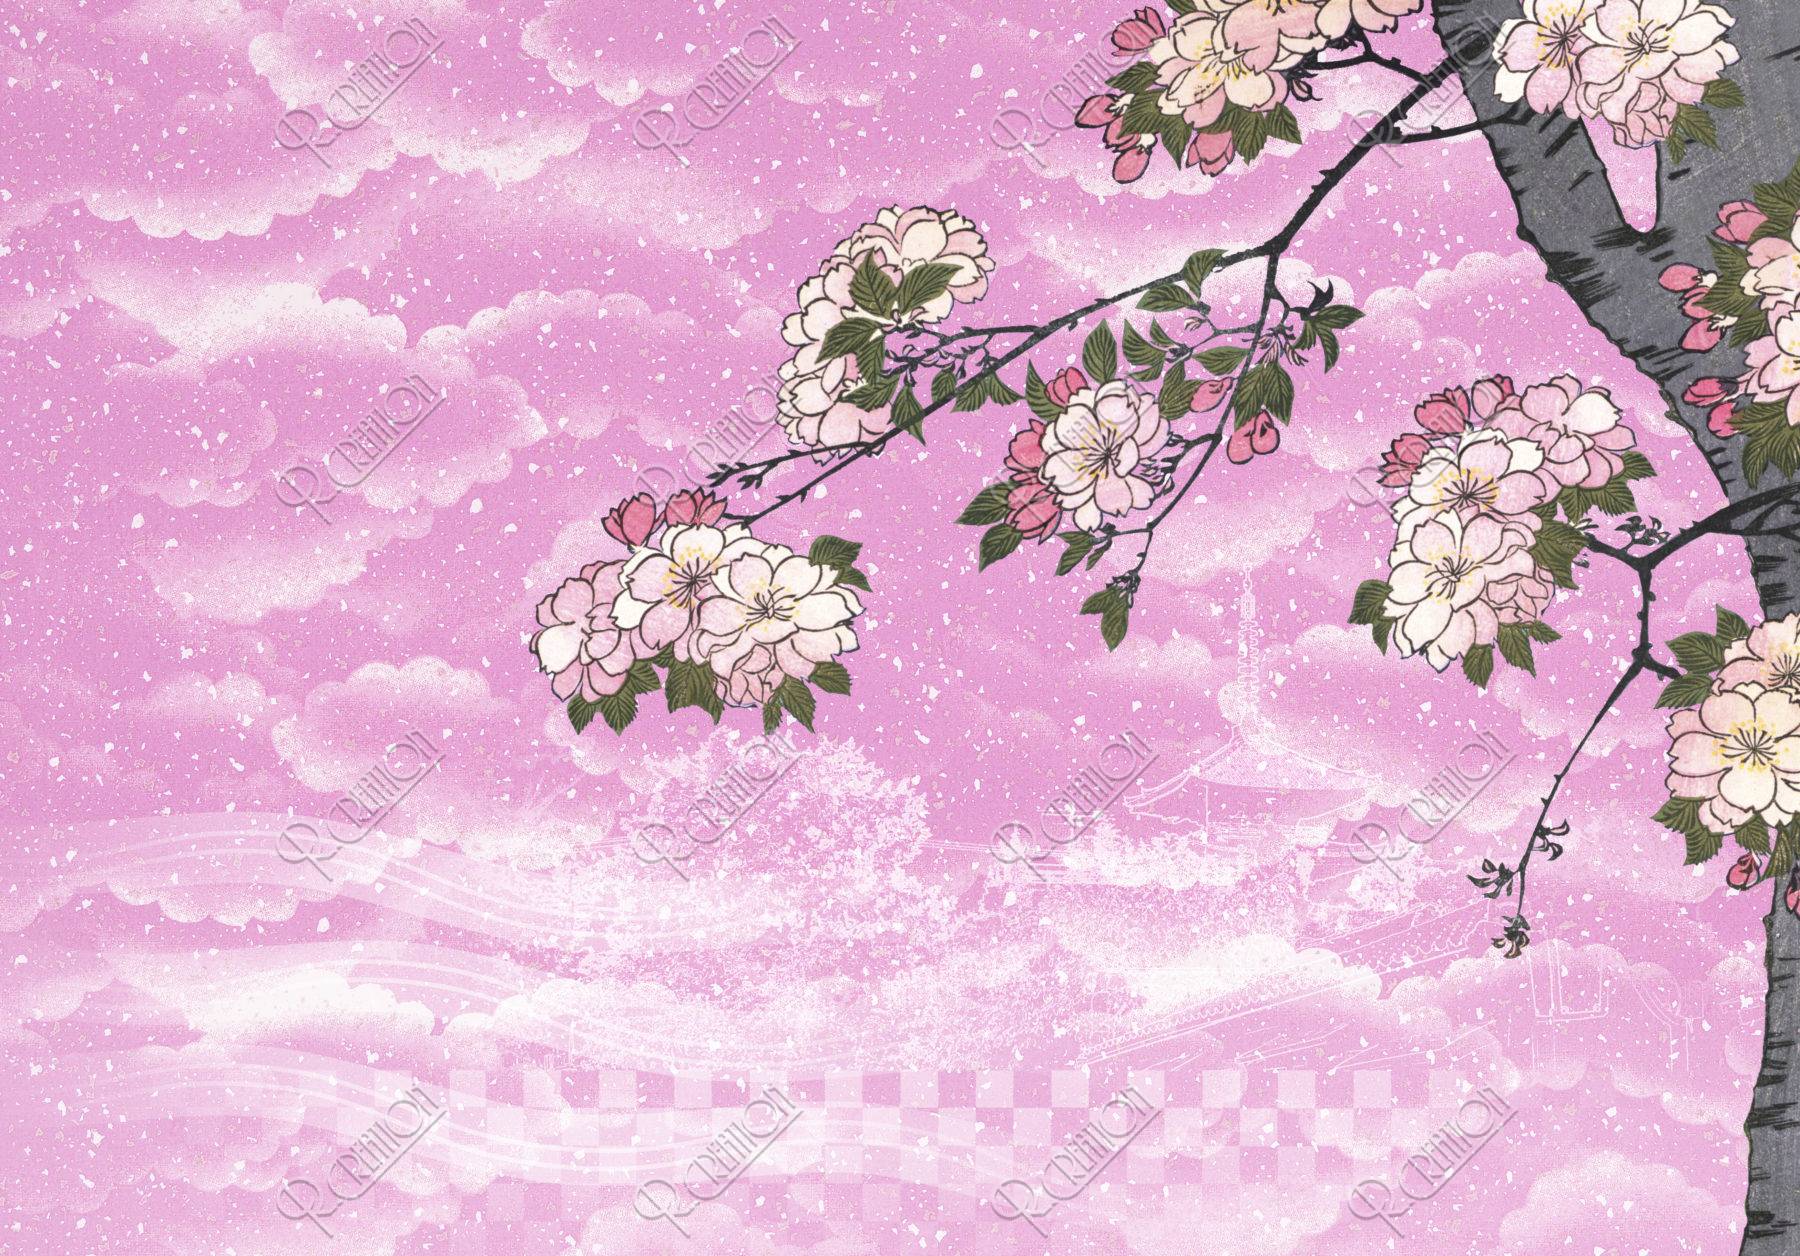 浮世絵の桜と京都の町並み 和風イメージ ｃｇ ストックフォト アールクリエーション